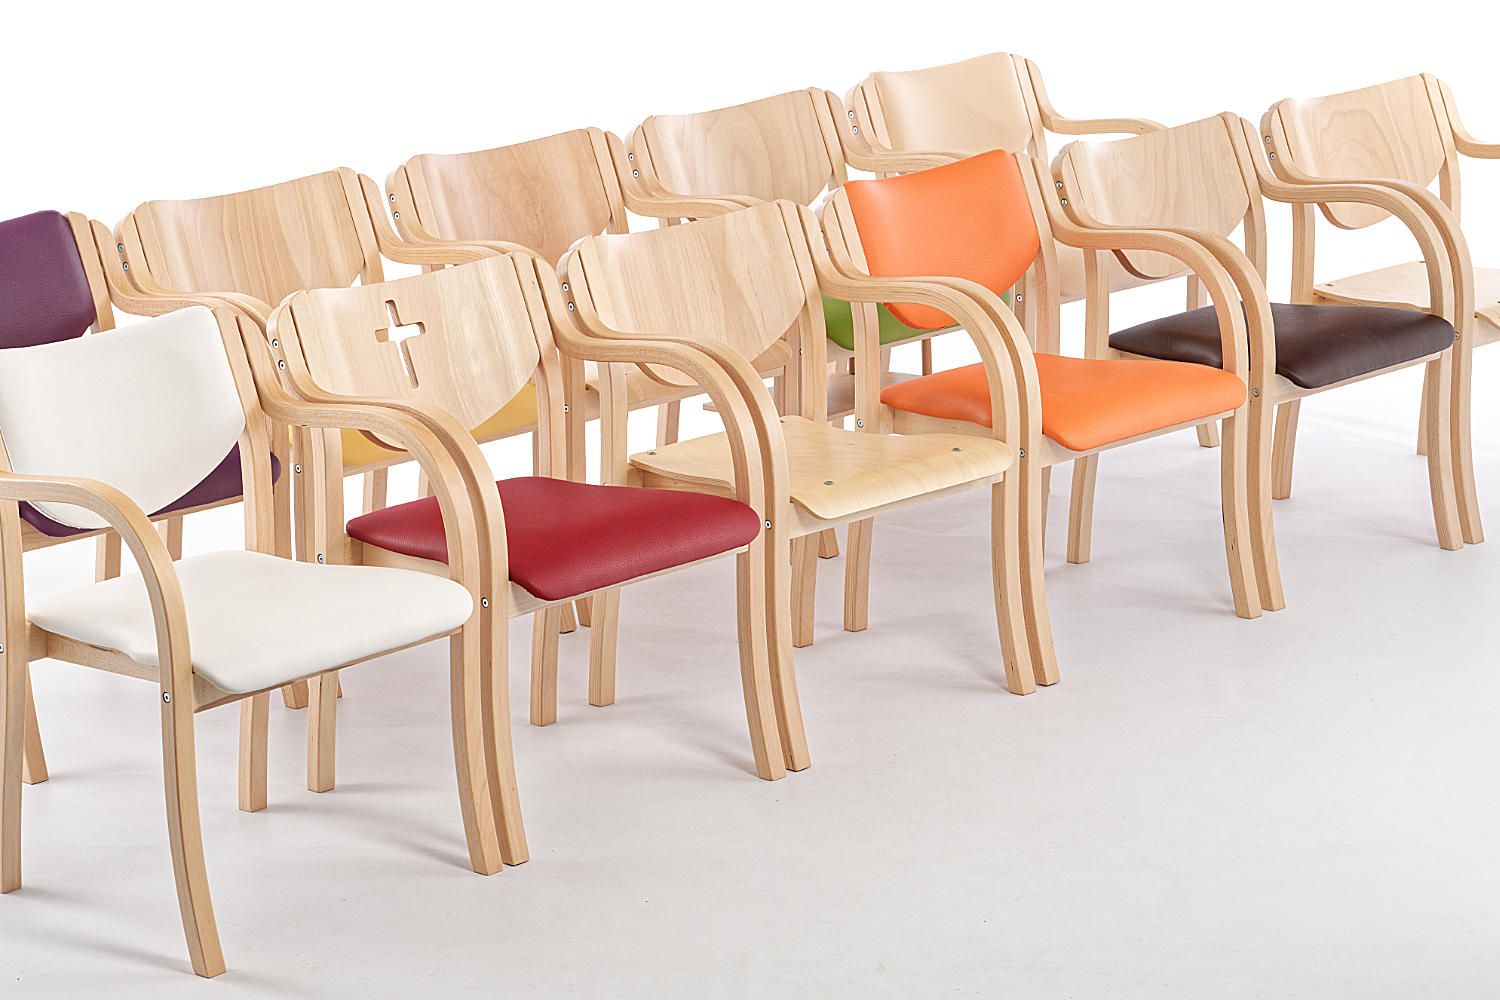 Die Holz Stühle unserer Modellfamilie Orlando AL passen in jede Räumlichkeit